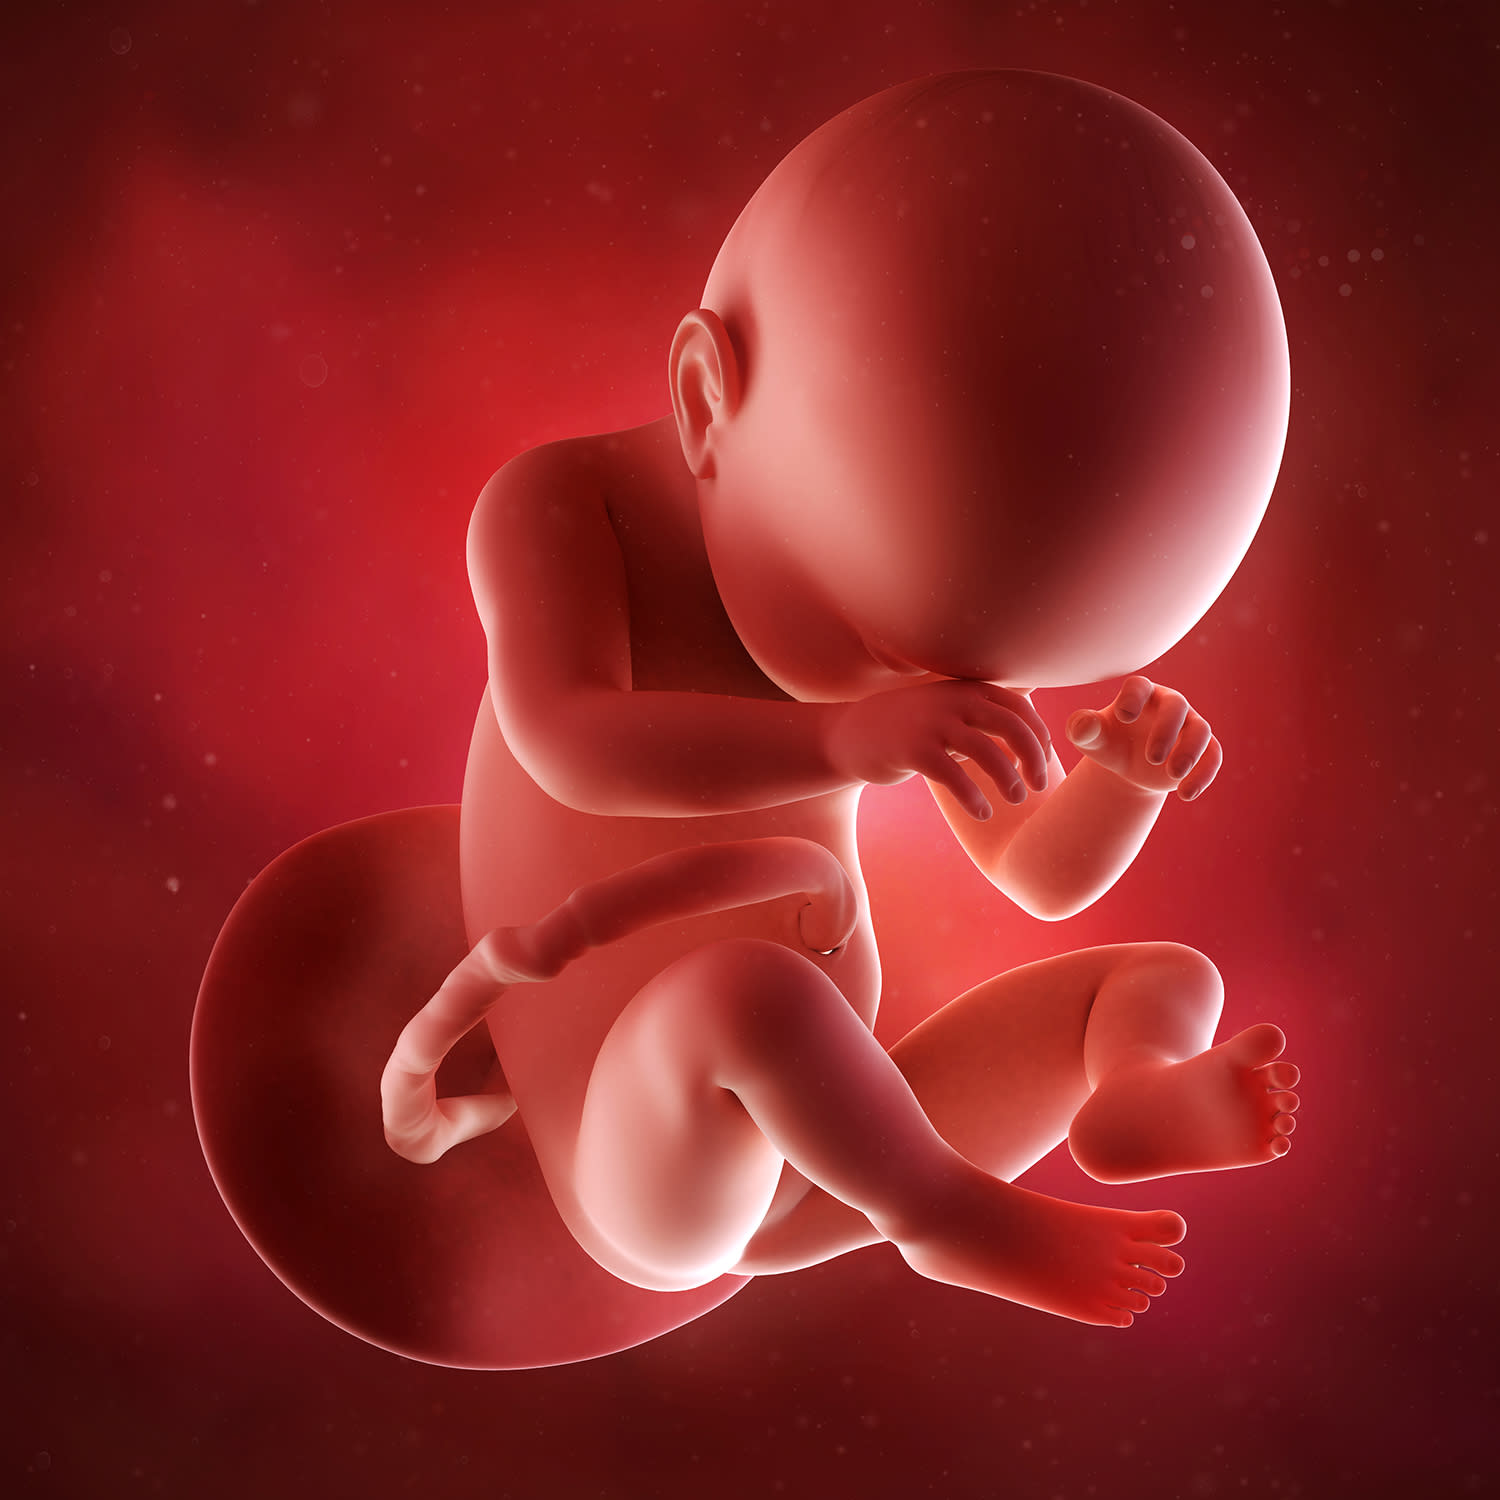 Плод в 38 недель беременности. Эмбрион на 37 неделе беременности. Младенец в утробе.